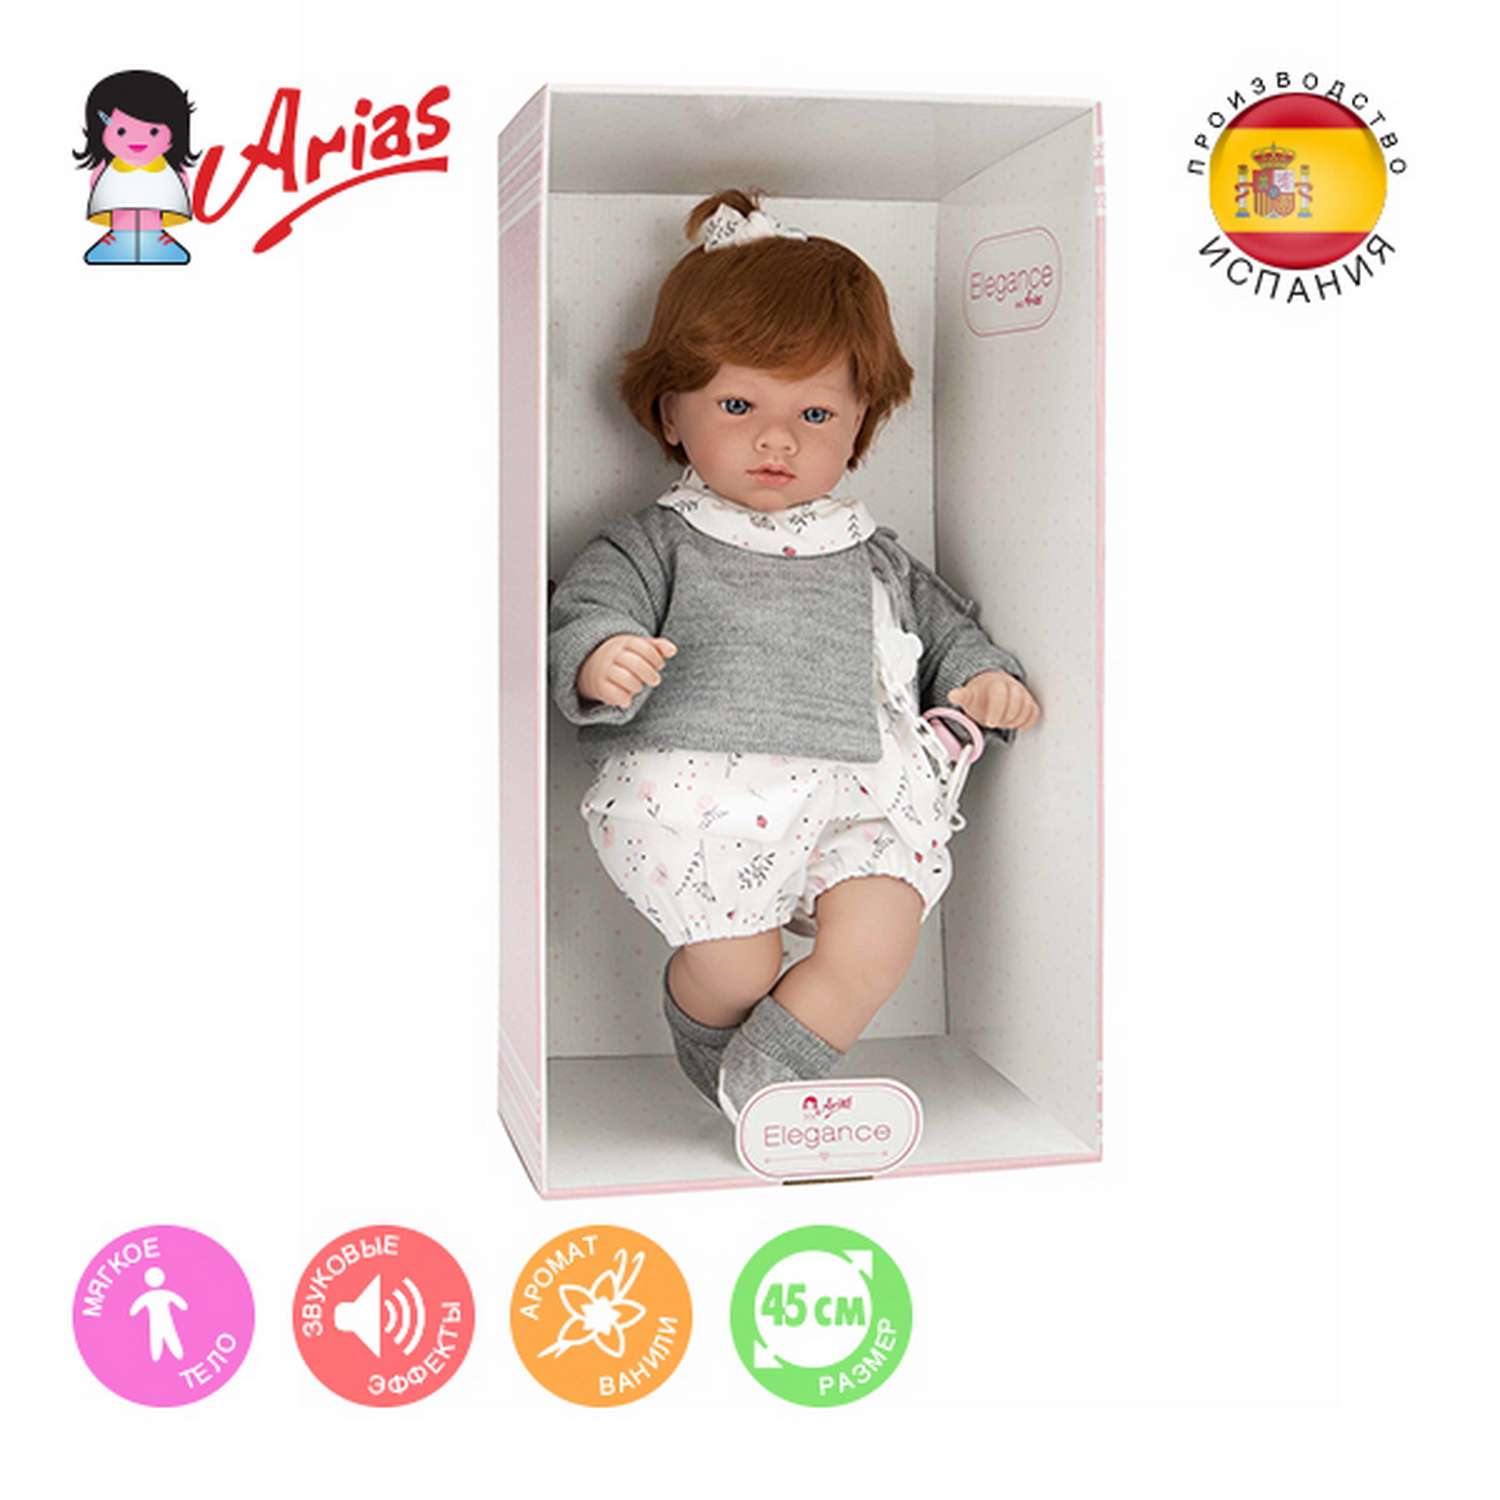 Кукла Arias Elegance aria 45 см в серой одежде Т22080 - фото 2